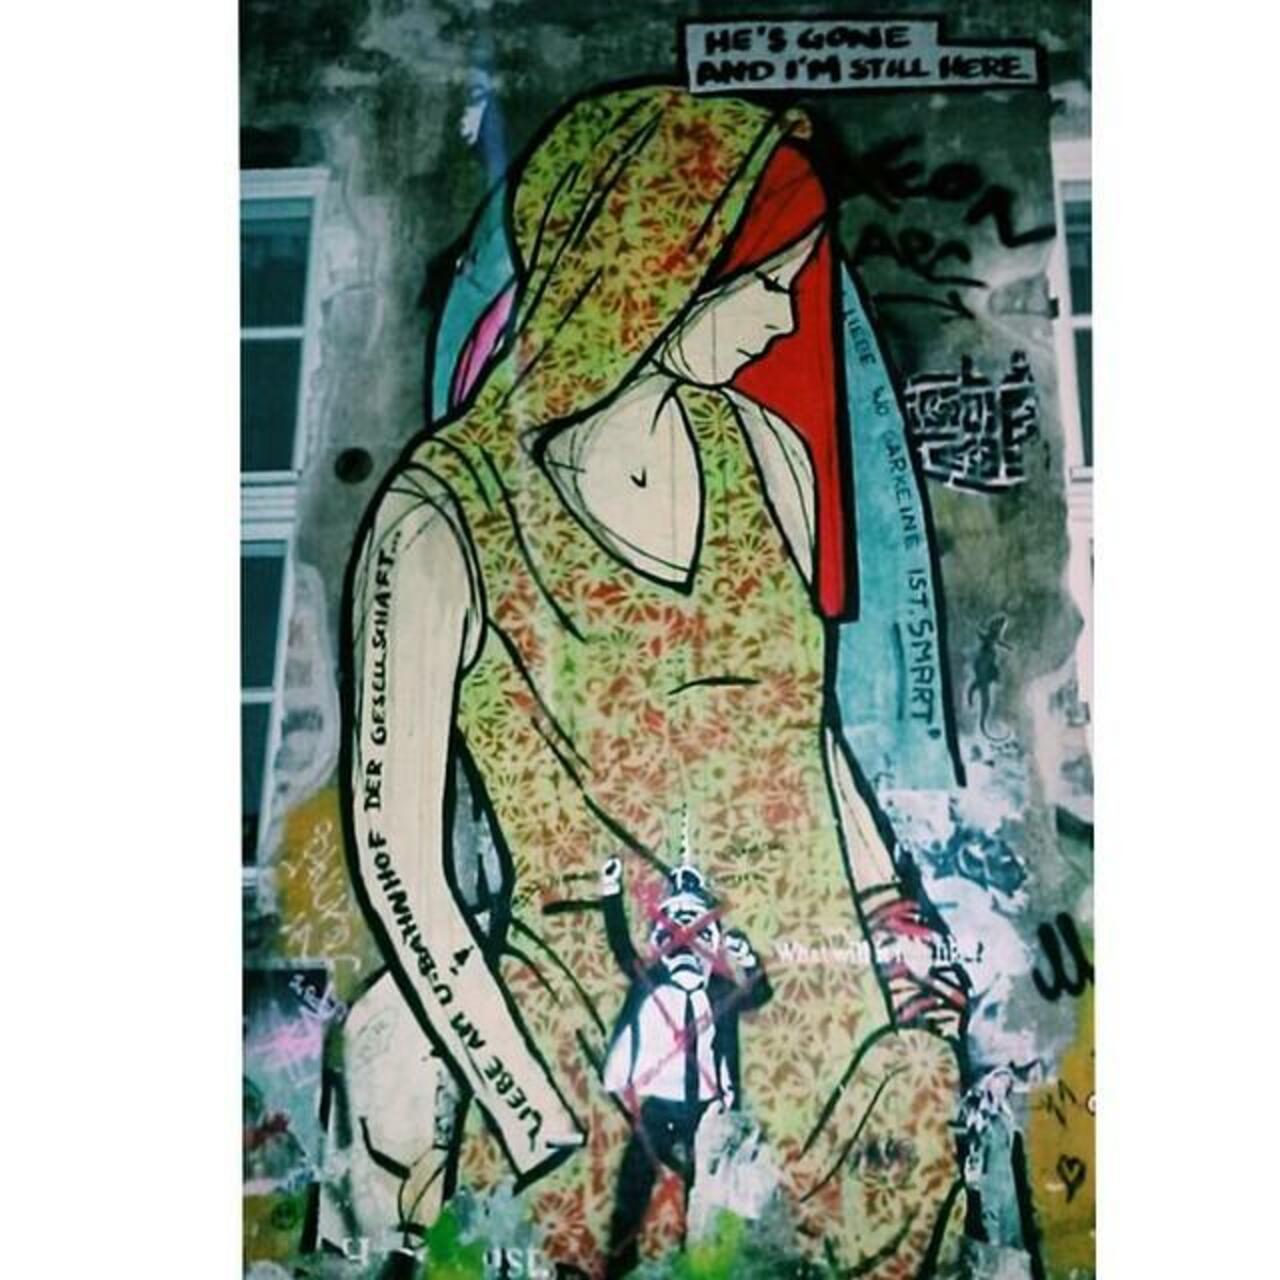 He's gone and I'm still here #vsco #vscocam #vscophile #streetart #streetartberlin #mural #graffiti #graffitiartist… http://t.co/vWpL56PFpP